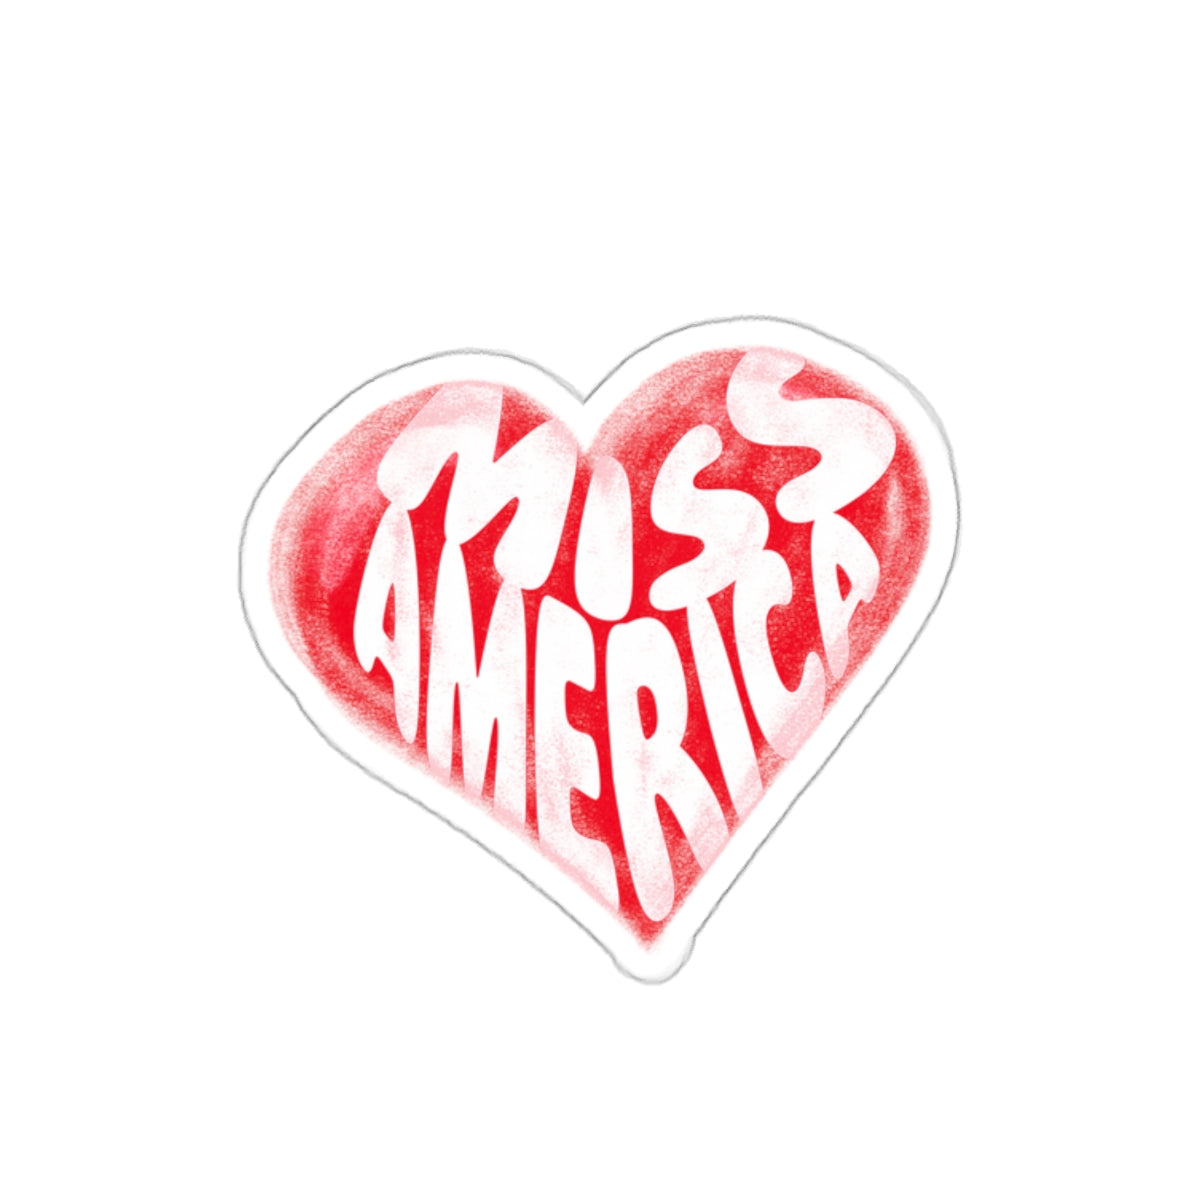 Graffiti Heart Kiss-Cut Stickers